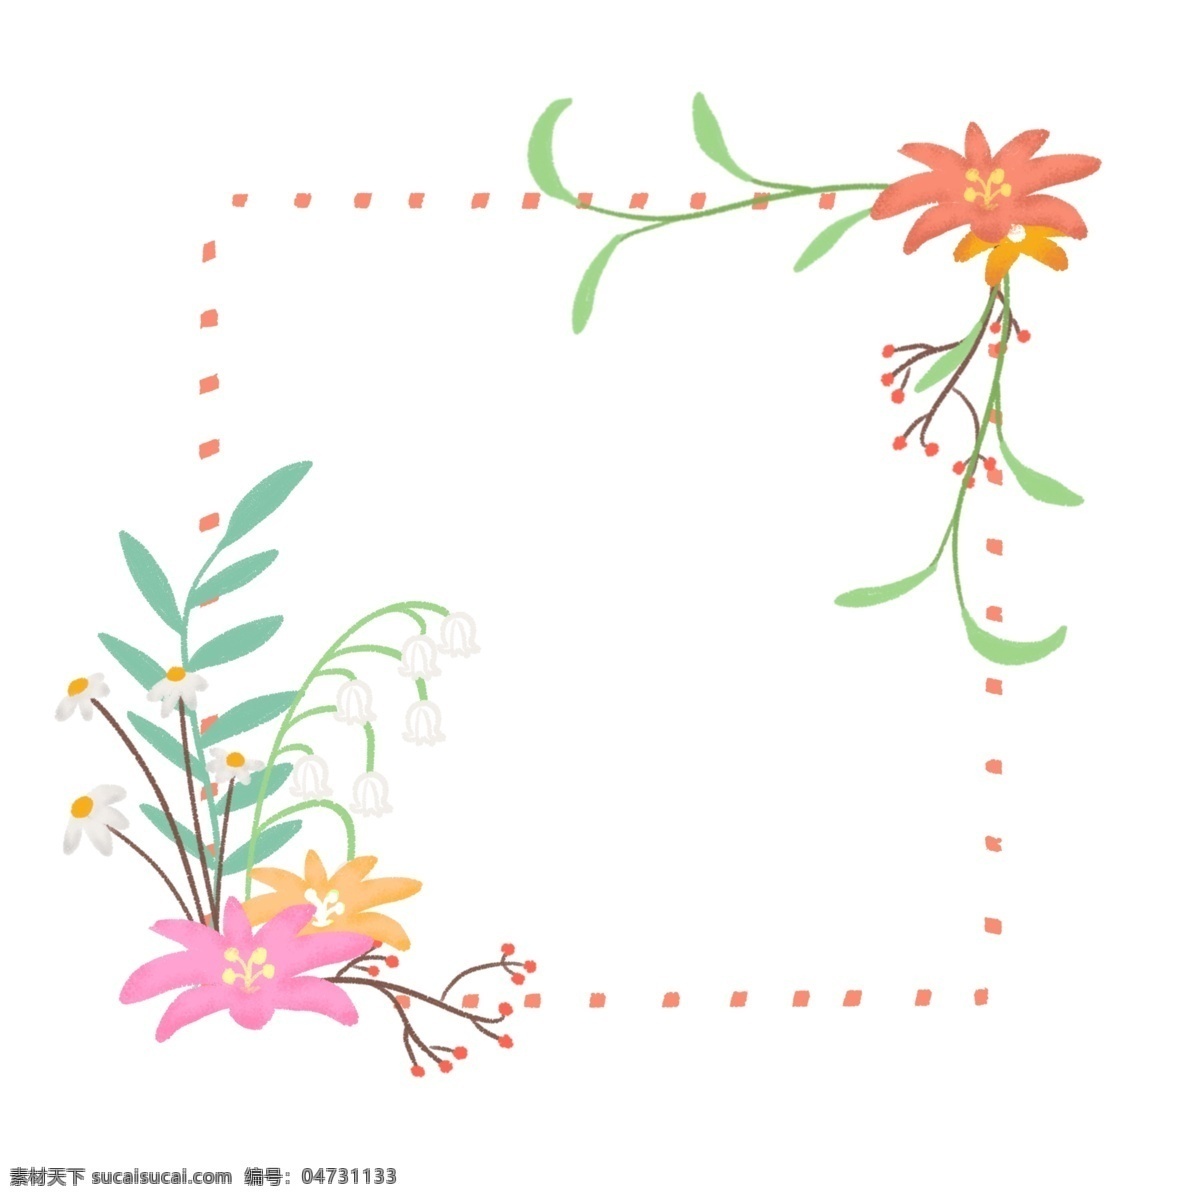 手绘 花朵 花卉 植物 绿植 边框 植物边框 花朵边框 花卉边框 手绘植物边框 手绘花朵边框 手绘花卉边框